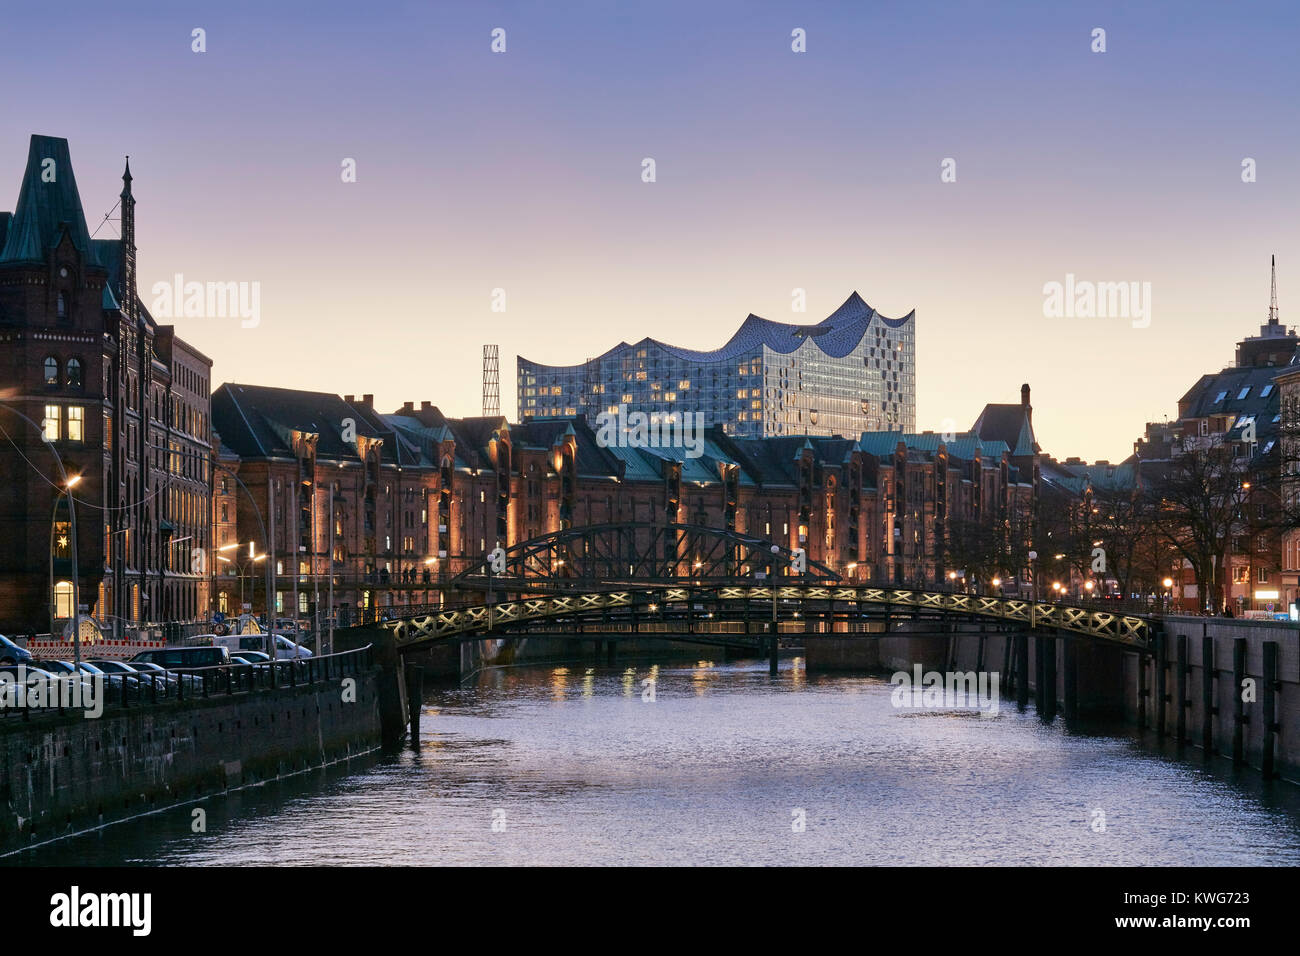 Elbphilharmonie, salle de concert par les architectes Herzog et de Meuron au bord du fleuve Elbe, HafenCity, Hambourg, Allemagne. Voir à l'aube. Banque D'Images